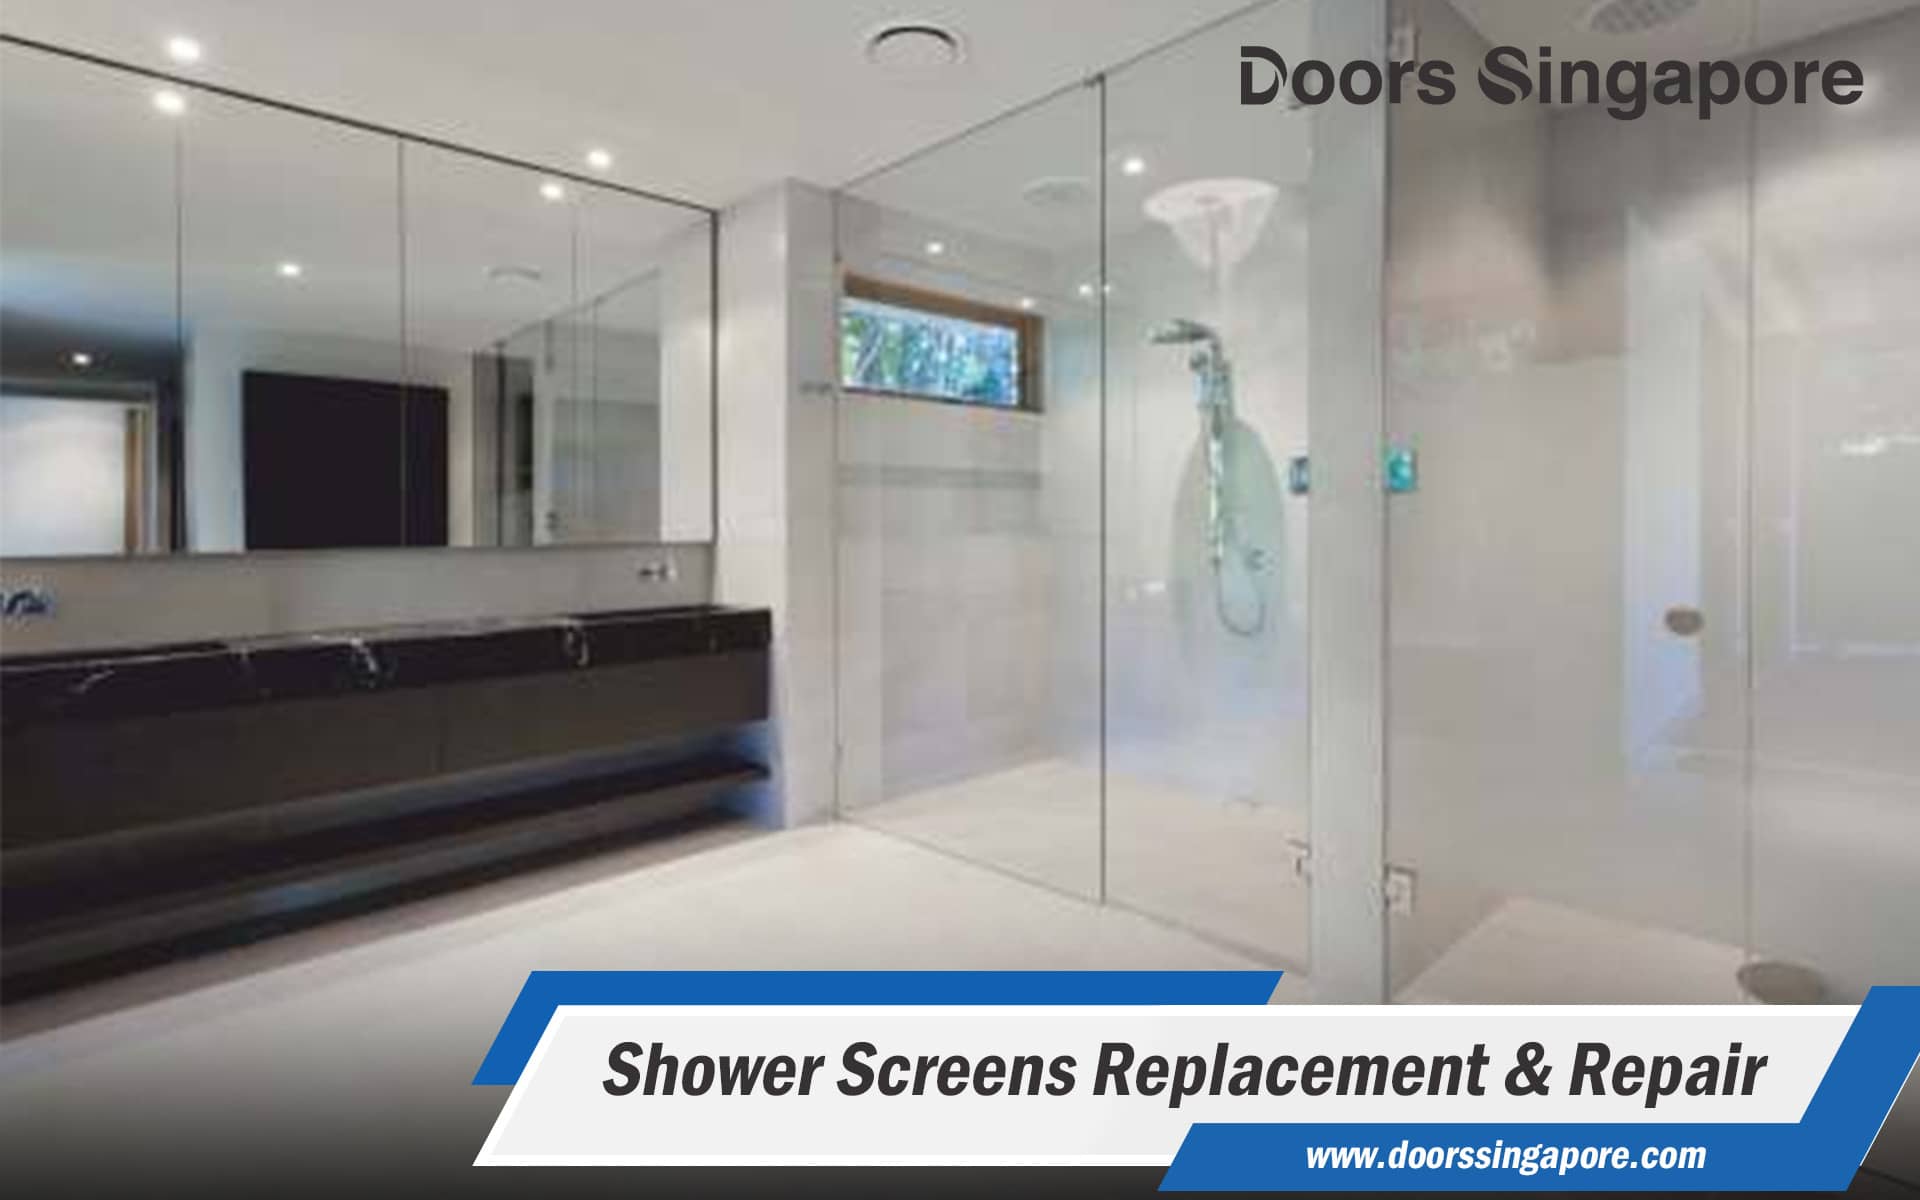  Shower Screens Replacement & Repair